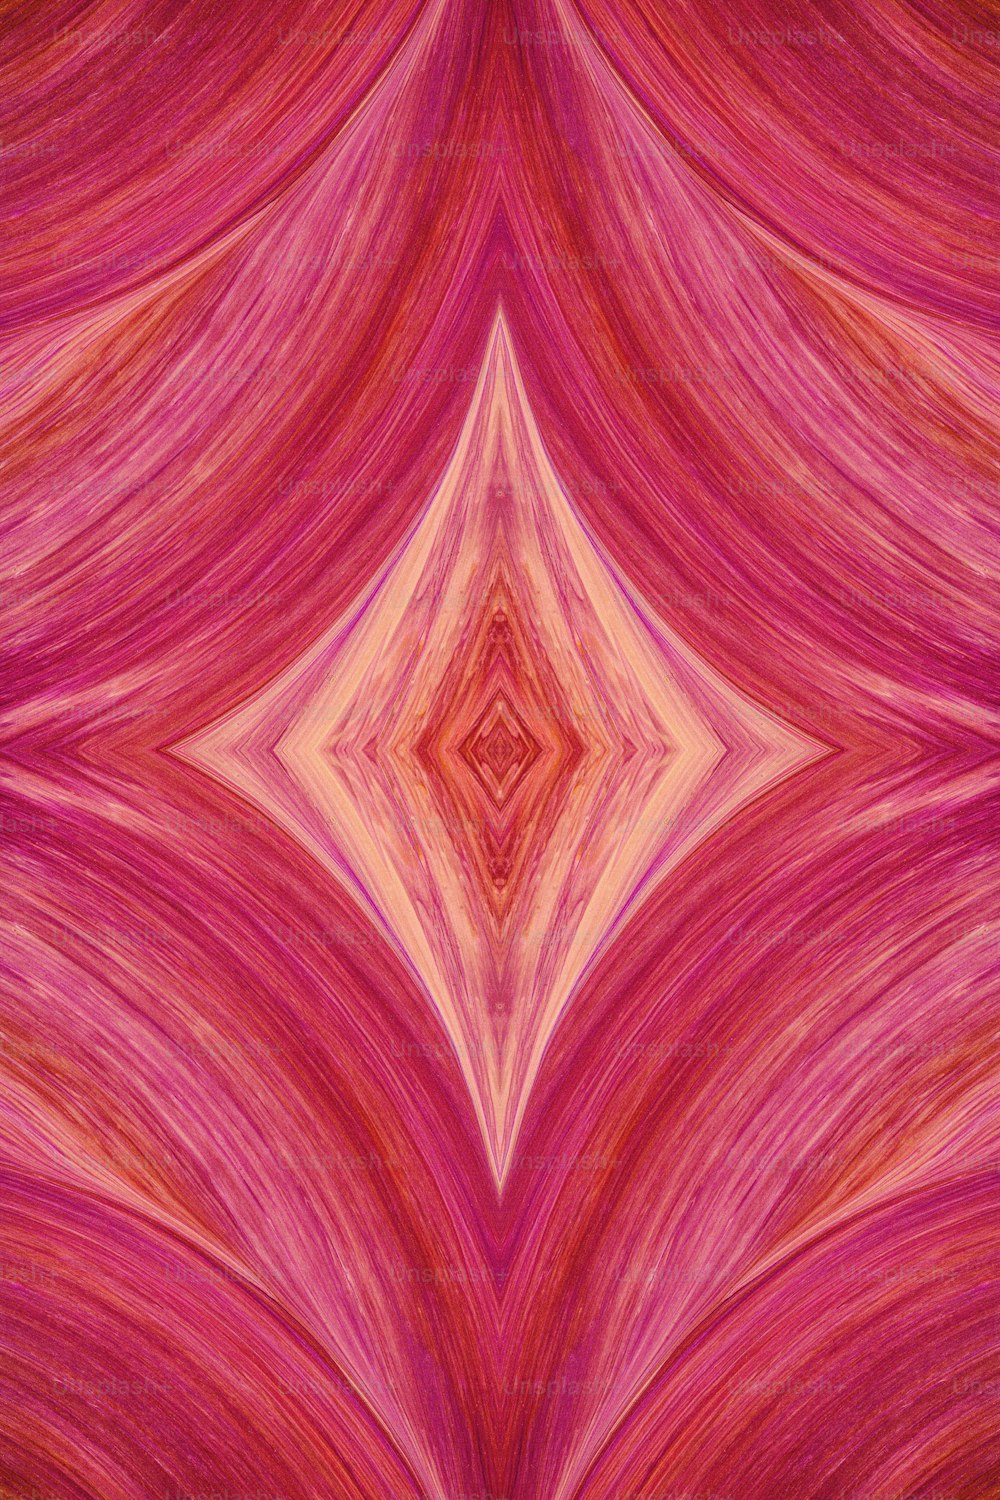 ピンクと赤の抽象的背景に星の模様